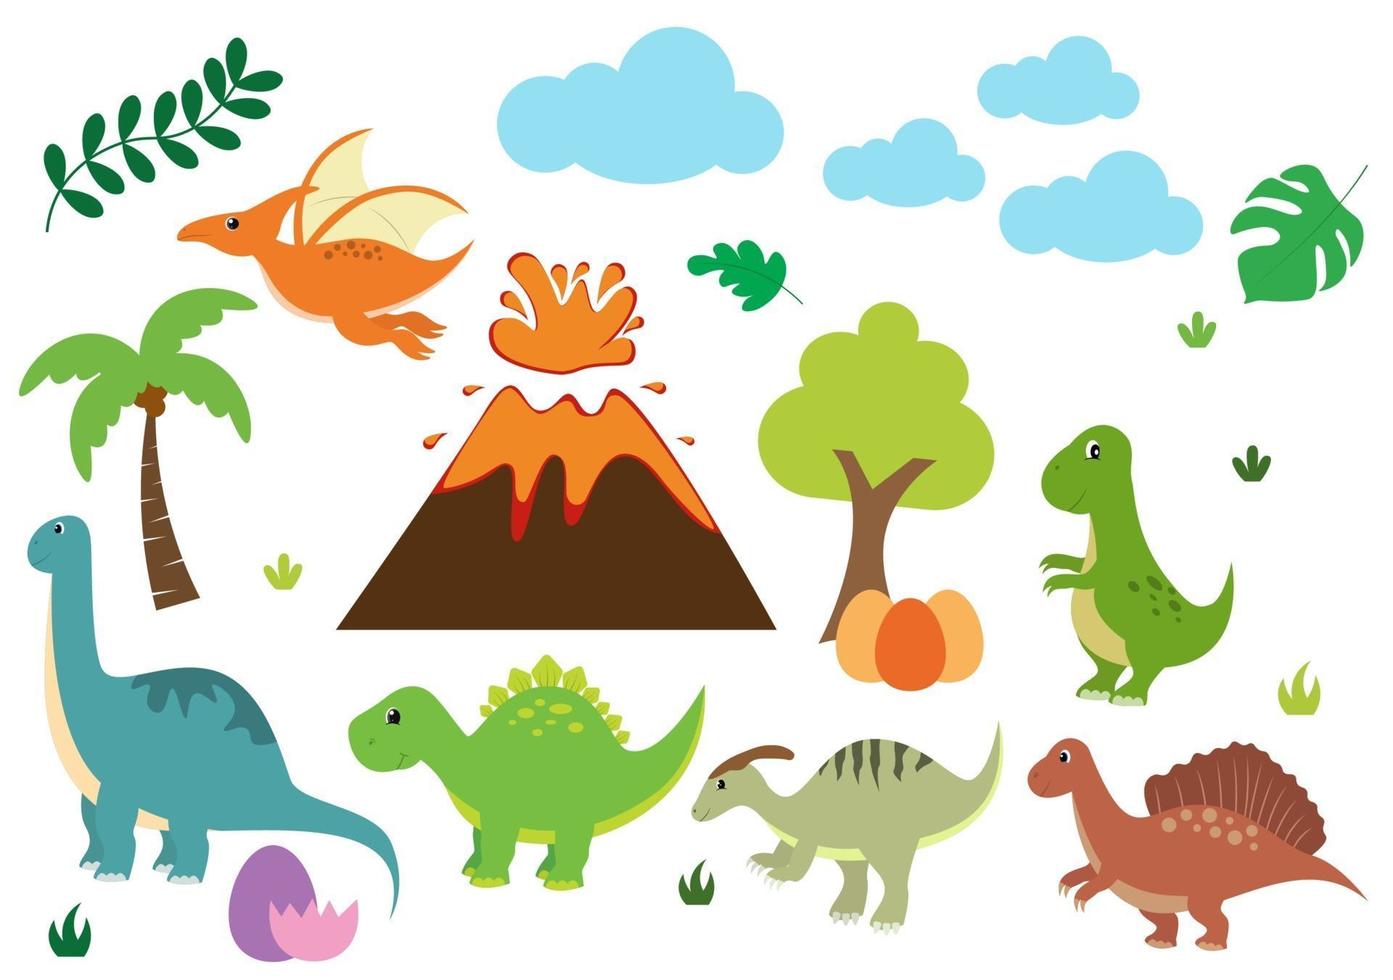 Ilustración de personajes de dibujos animados de dinosaurios lindos como spinosaurus, parasaurolophus, estegosaurio, tiranosaurio, pterodáctilo y diplodocus vector